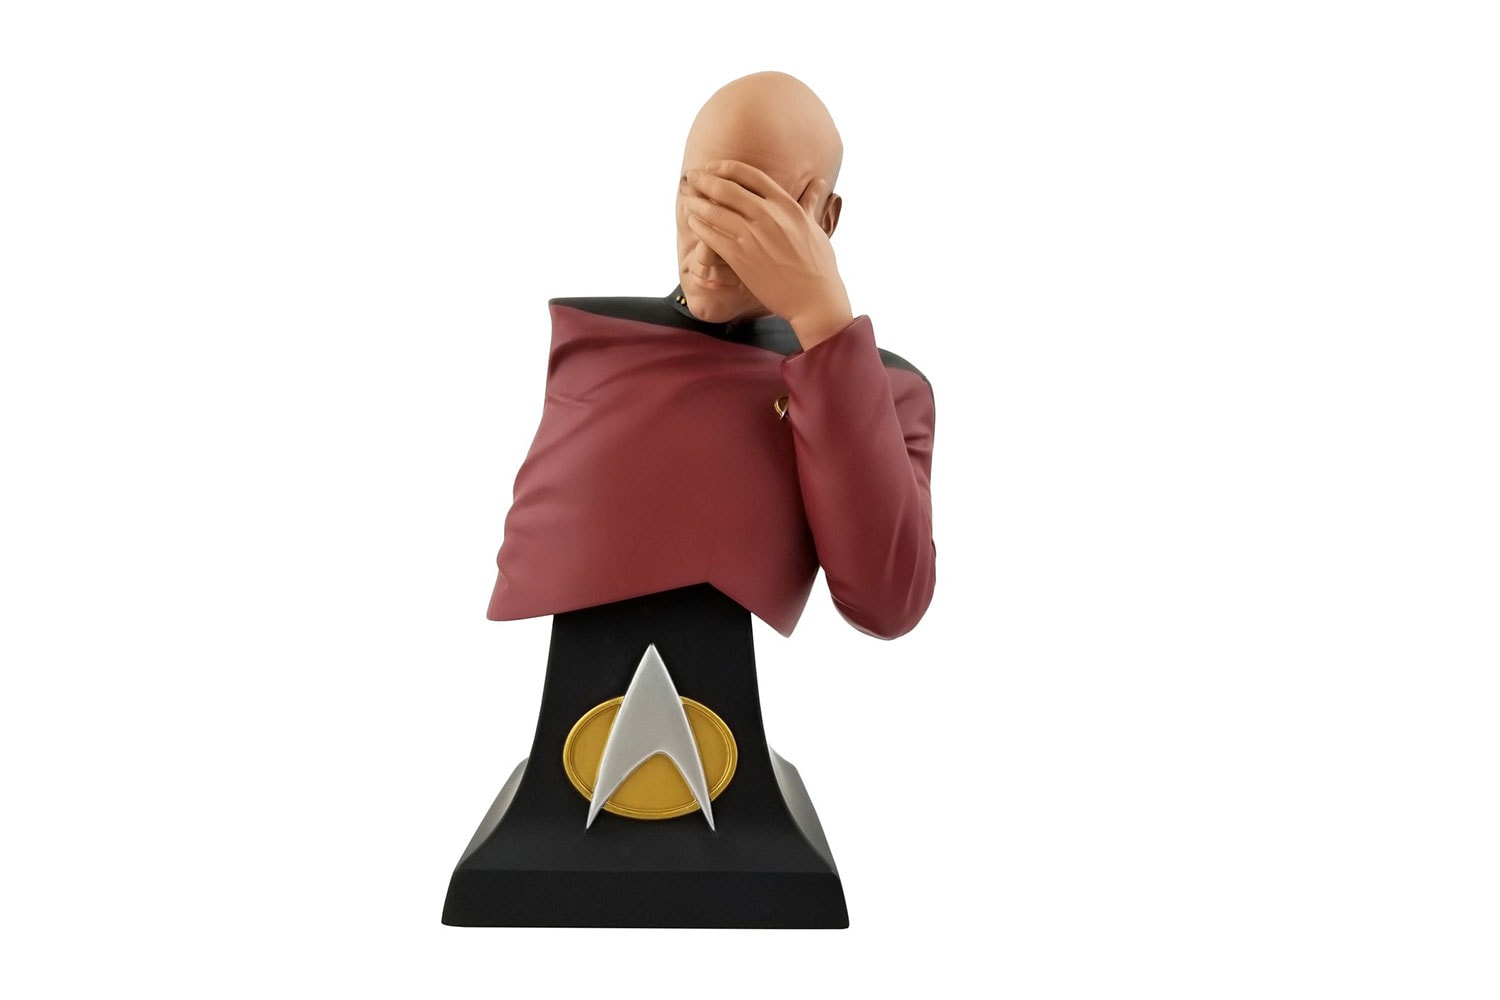 Captain Picard Star-Trek Facepalm Bust Pre-Order star trek next generation trekkies space warp speed facepalm san diego comic con 2020 collectibles patrick stewart 